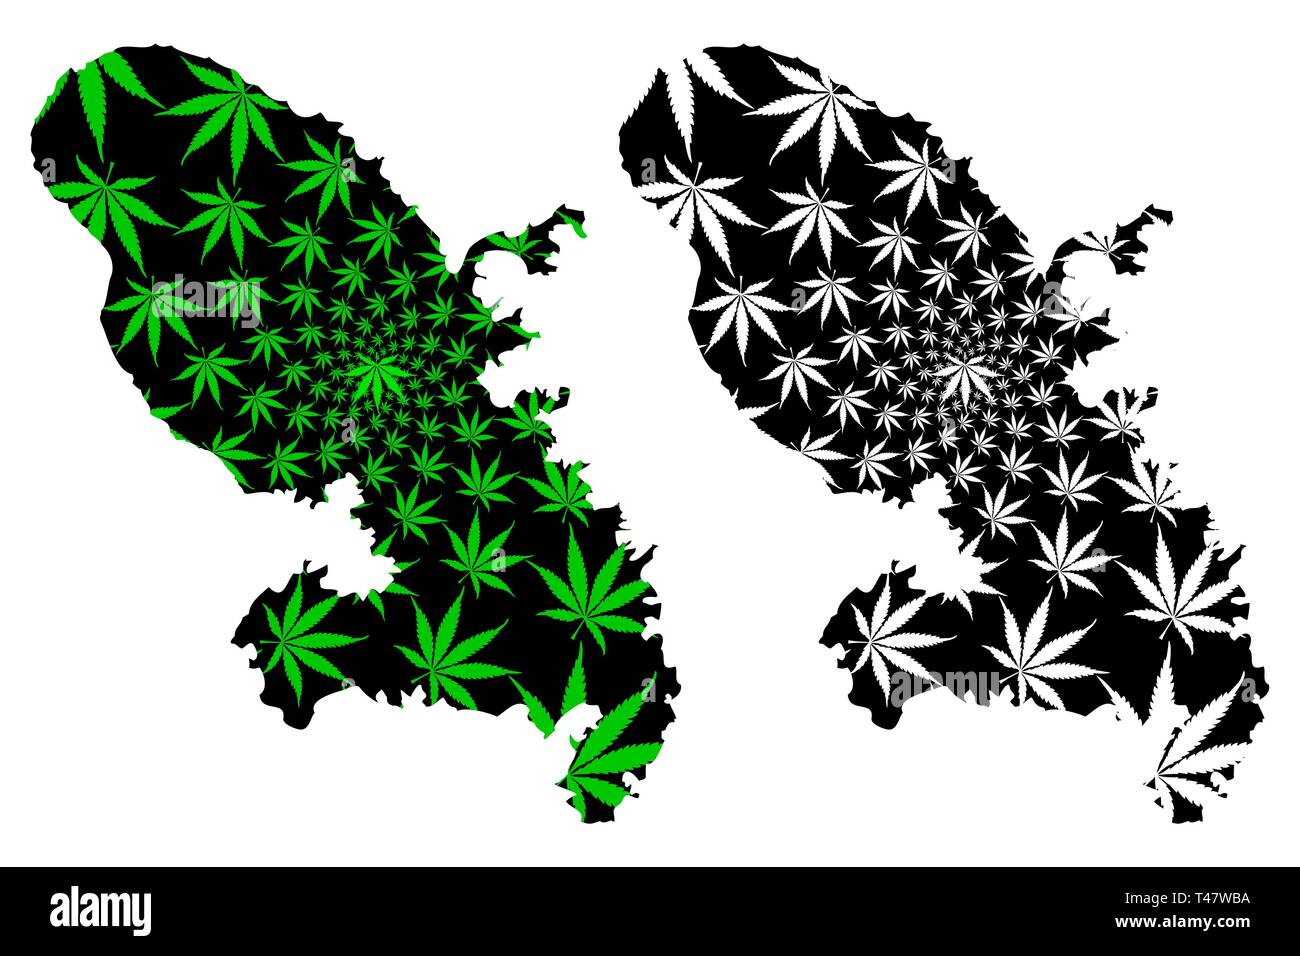 Martinique - carte feuille de cannabis est vert et noir, la Martinique carte de marijuana, THC) feuillage, Illustration de Vecteur